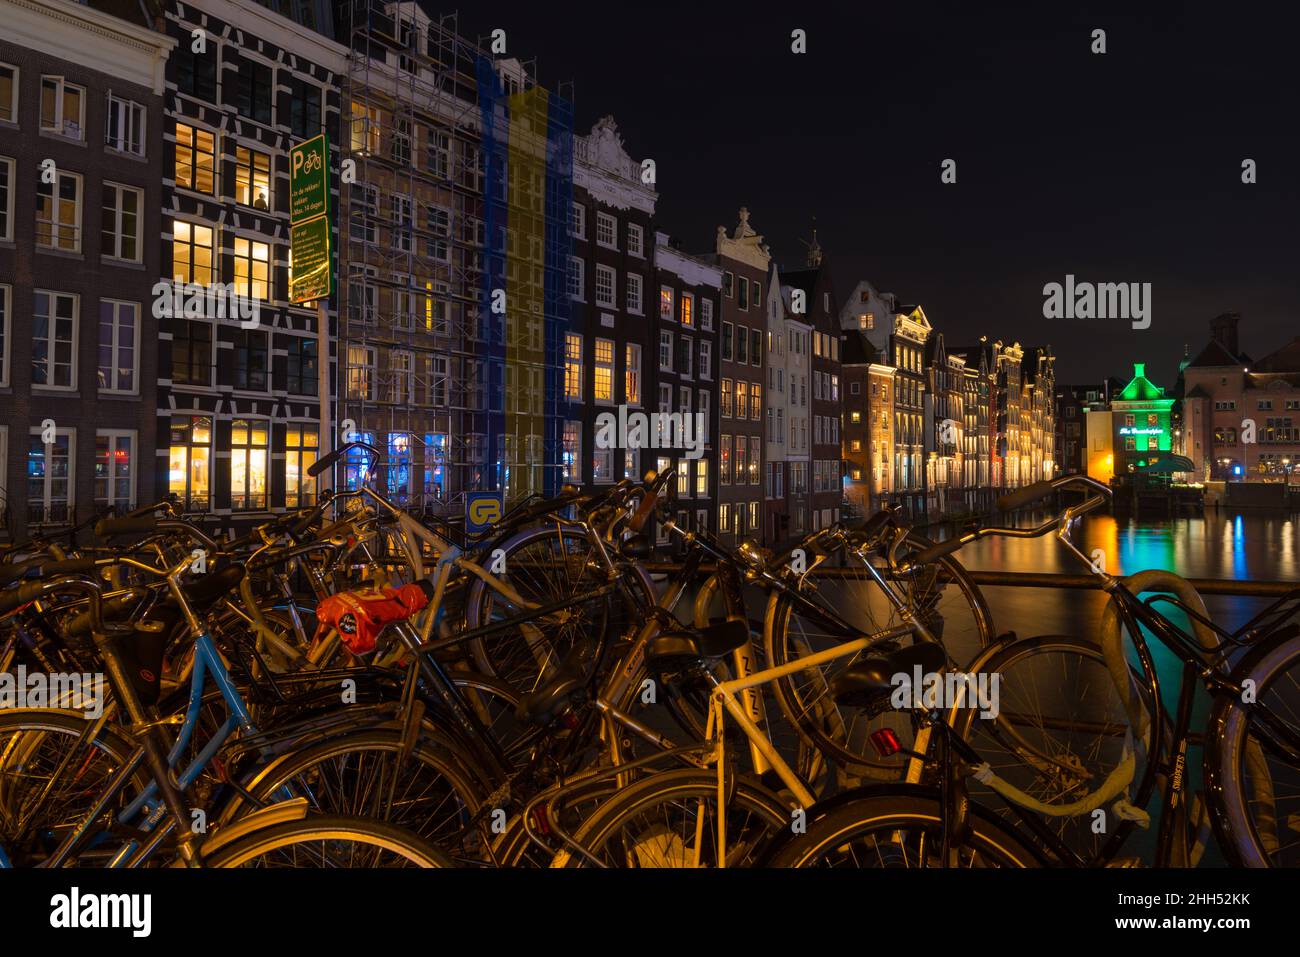 AMSTERDAM - 14 DICEMBRE 2019: Le famose case dei canali danzanti sul canale Damrak di notte con un sacco di biciclette nella parte anteriore Foto Stock